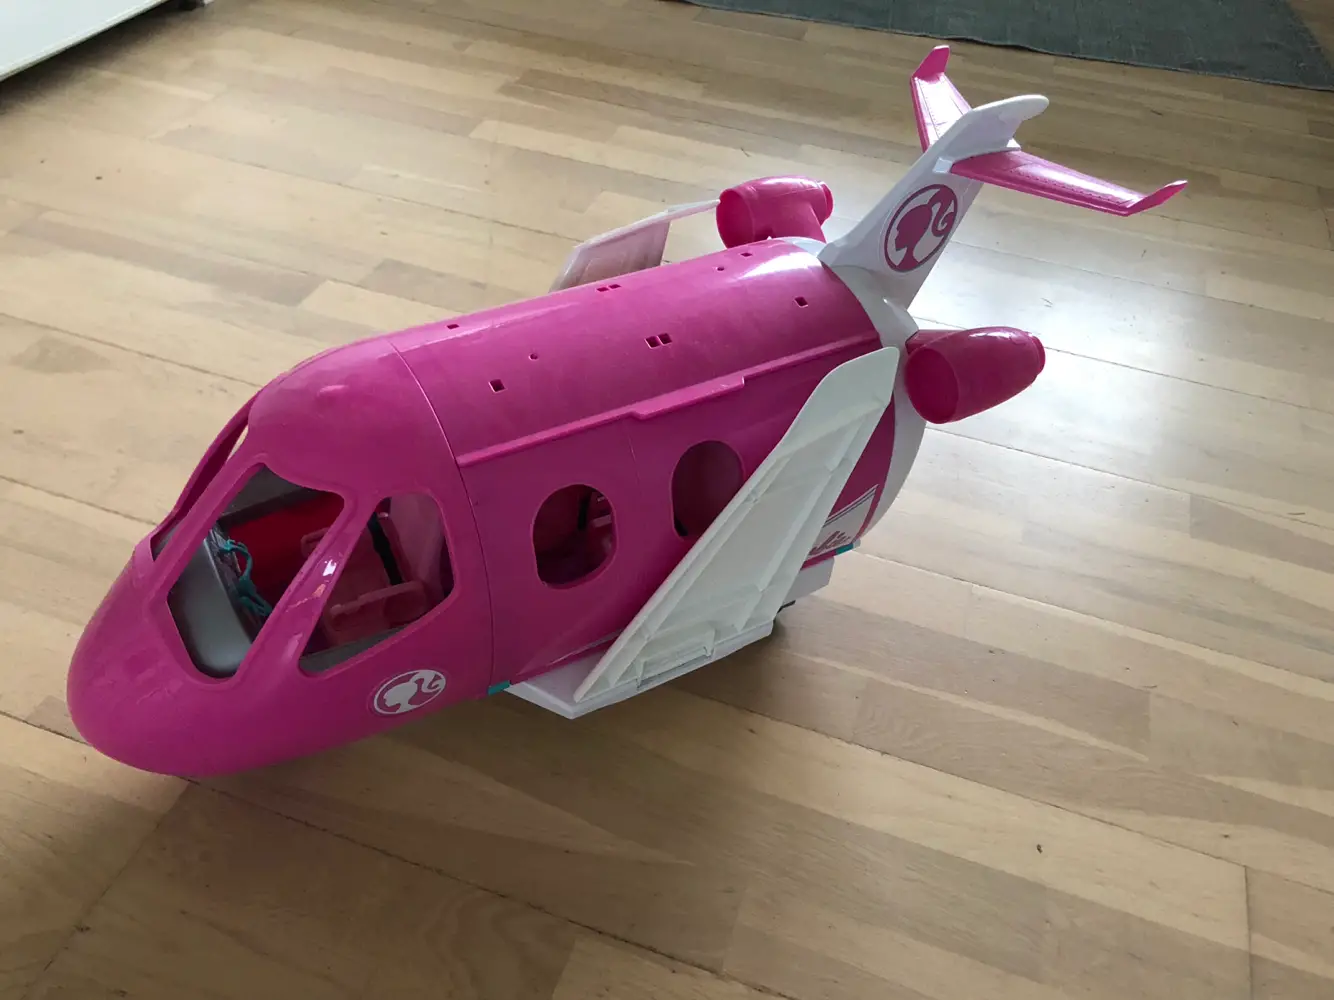 Køb Barbie Flyvemaskine af betina på Reshopper · secondhand børn, mor og bolig